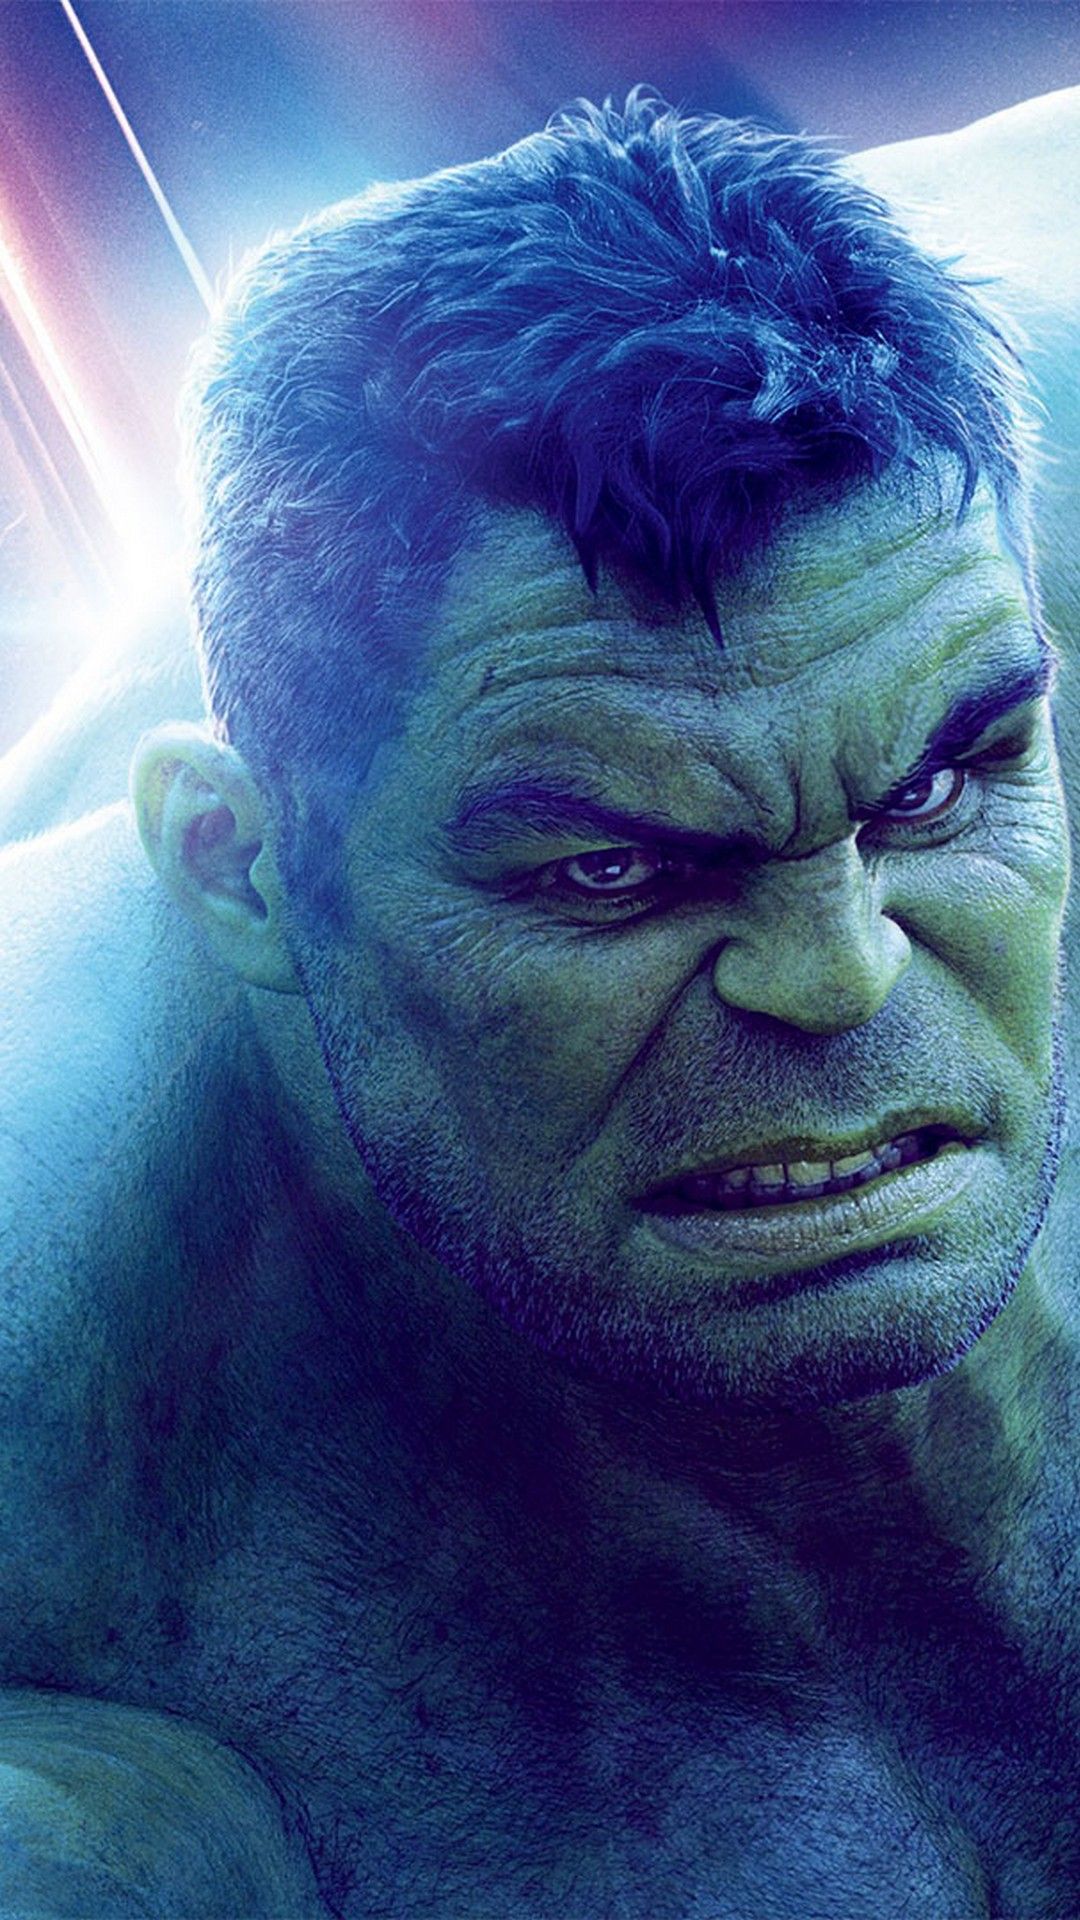 12+] Hulk Endgame Wallpapers - WallpaperSafari